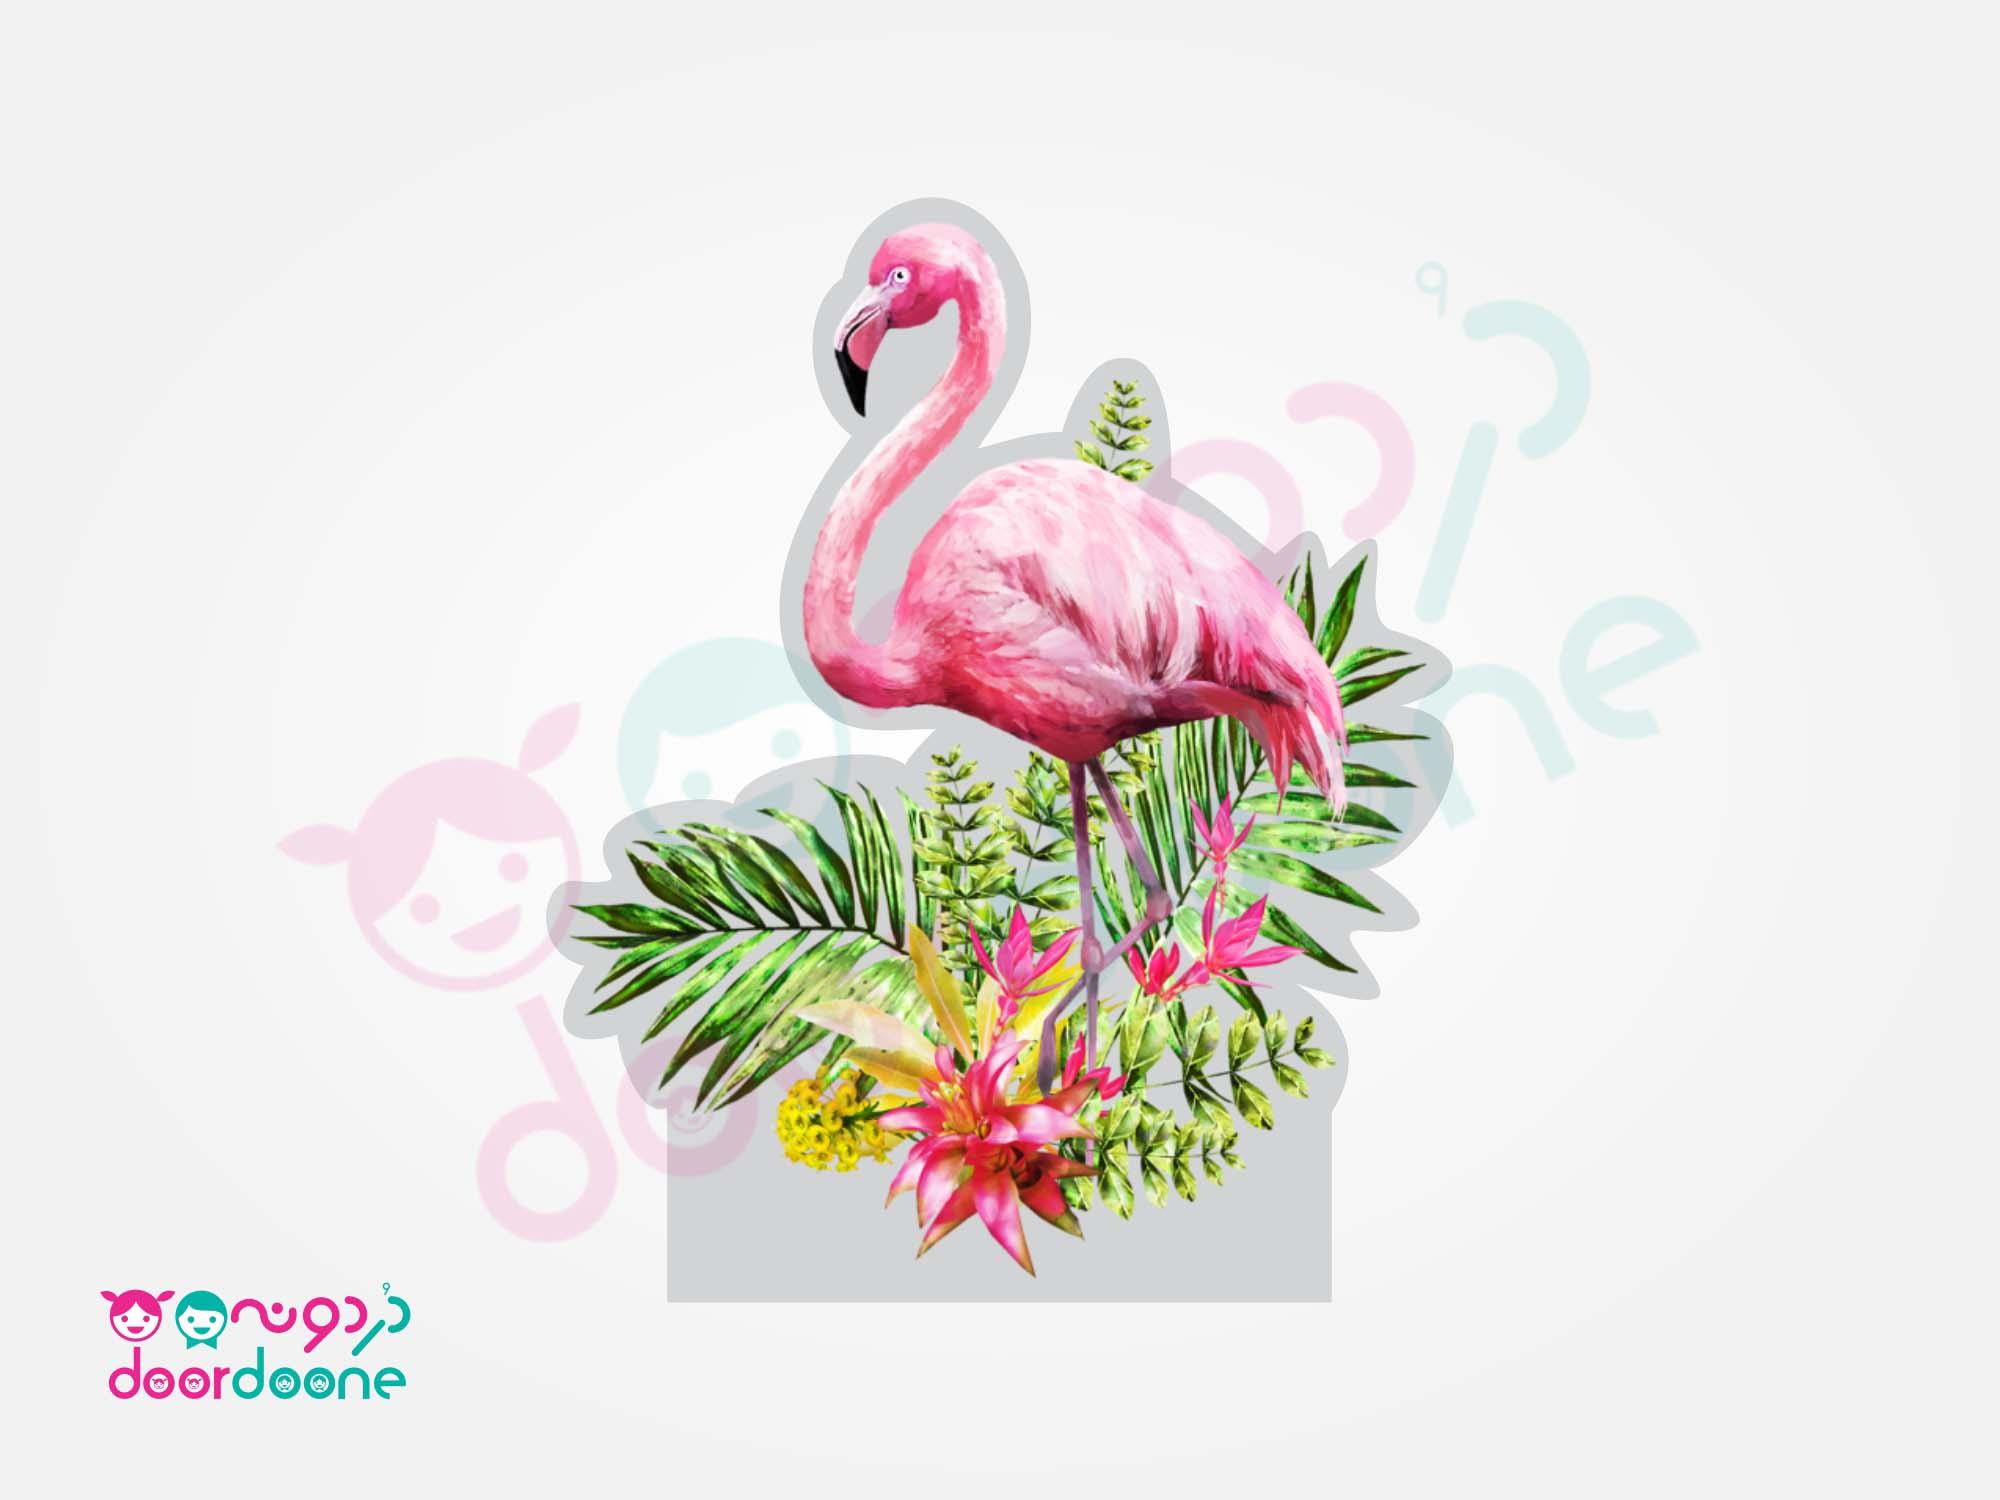 استند فلامینگو (flamingo) ارتفاع 70 سانتیمتر